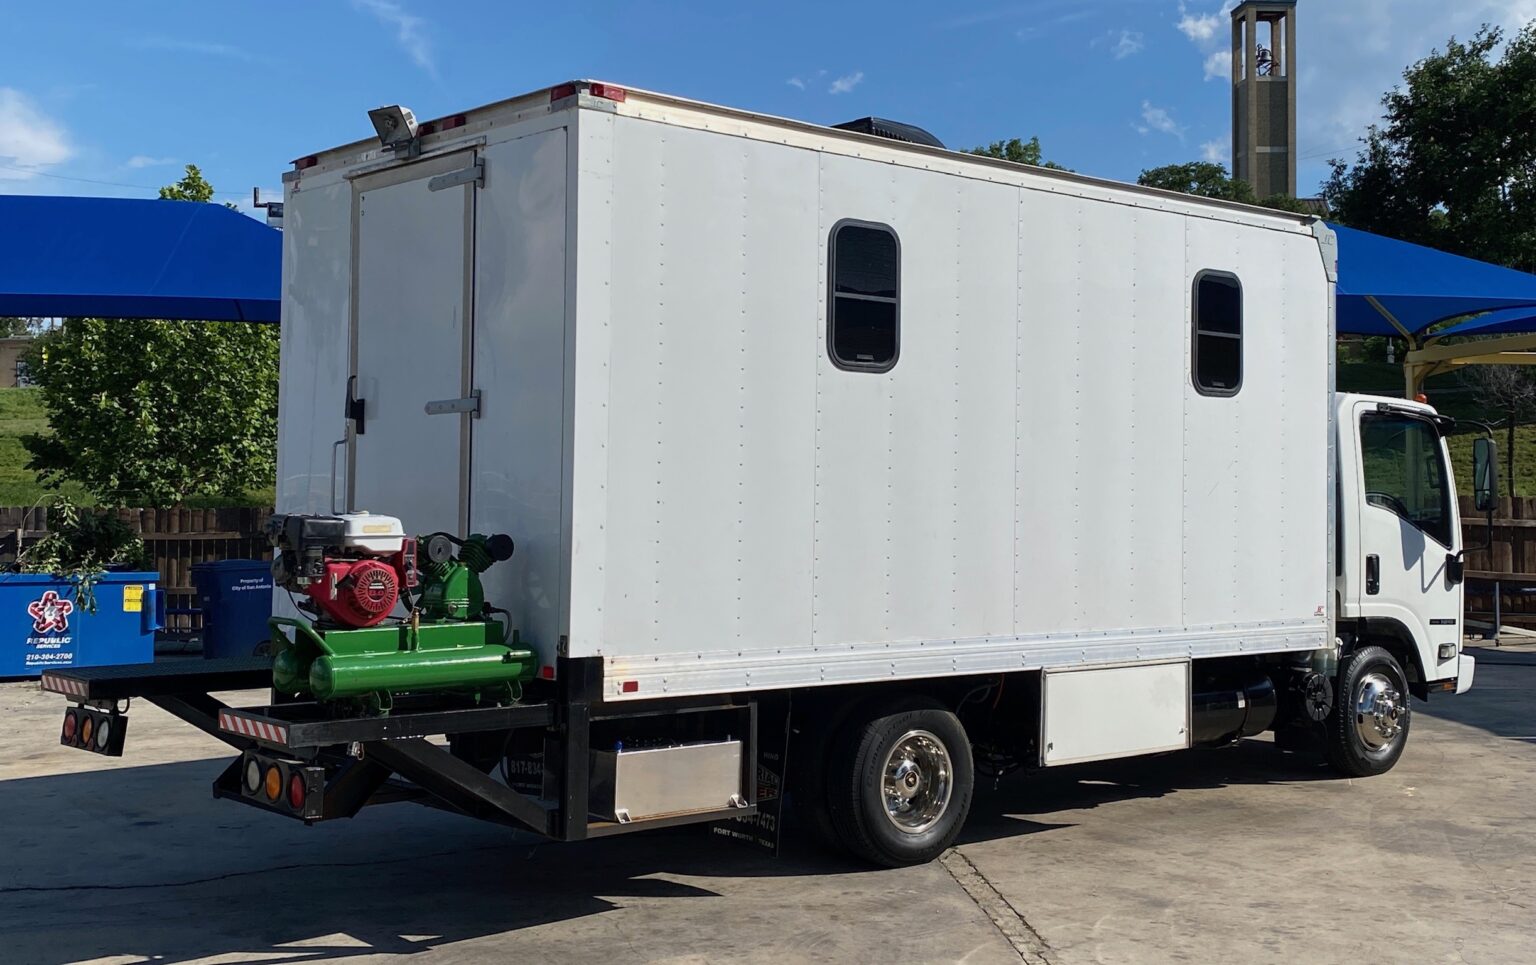 ISUZU NPR Diesel __ Mobile Shop / Office Truck! __